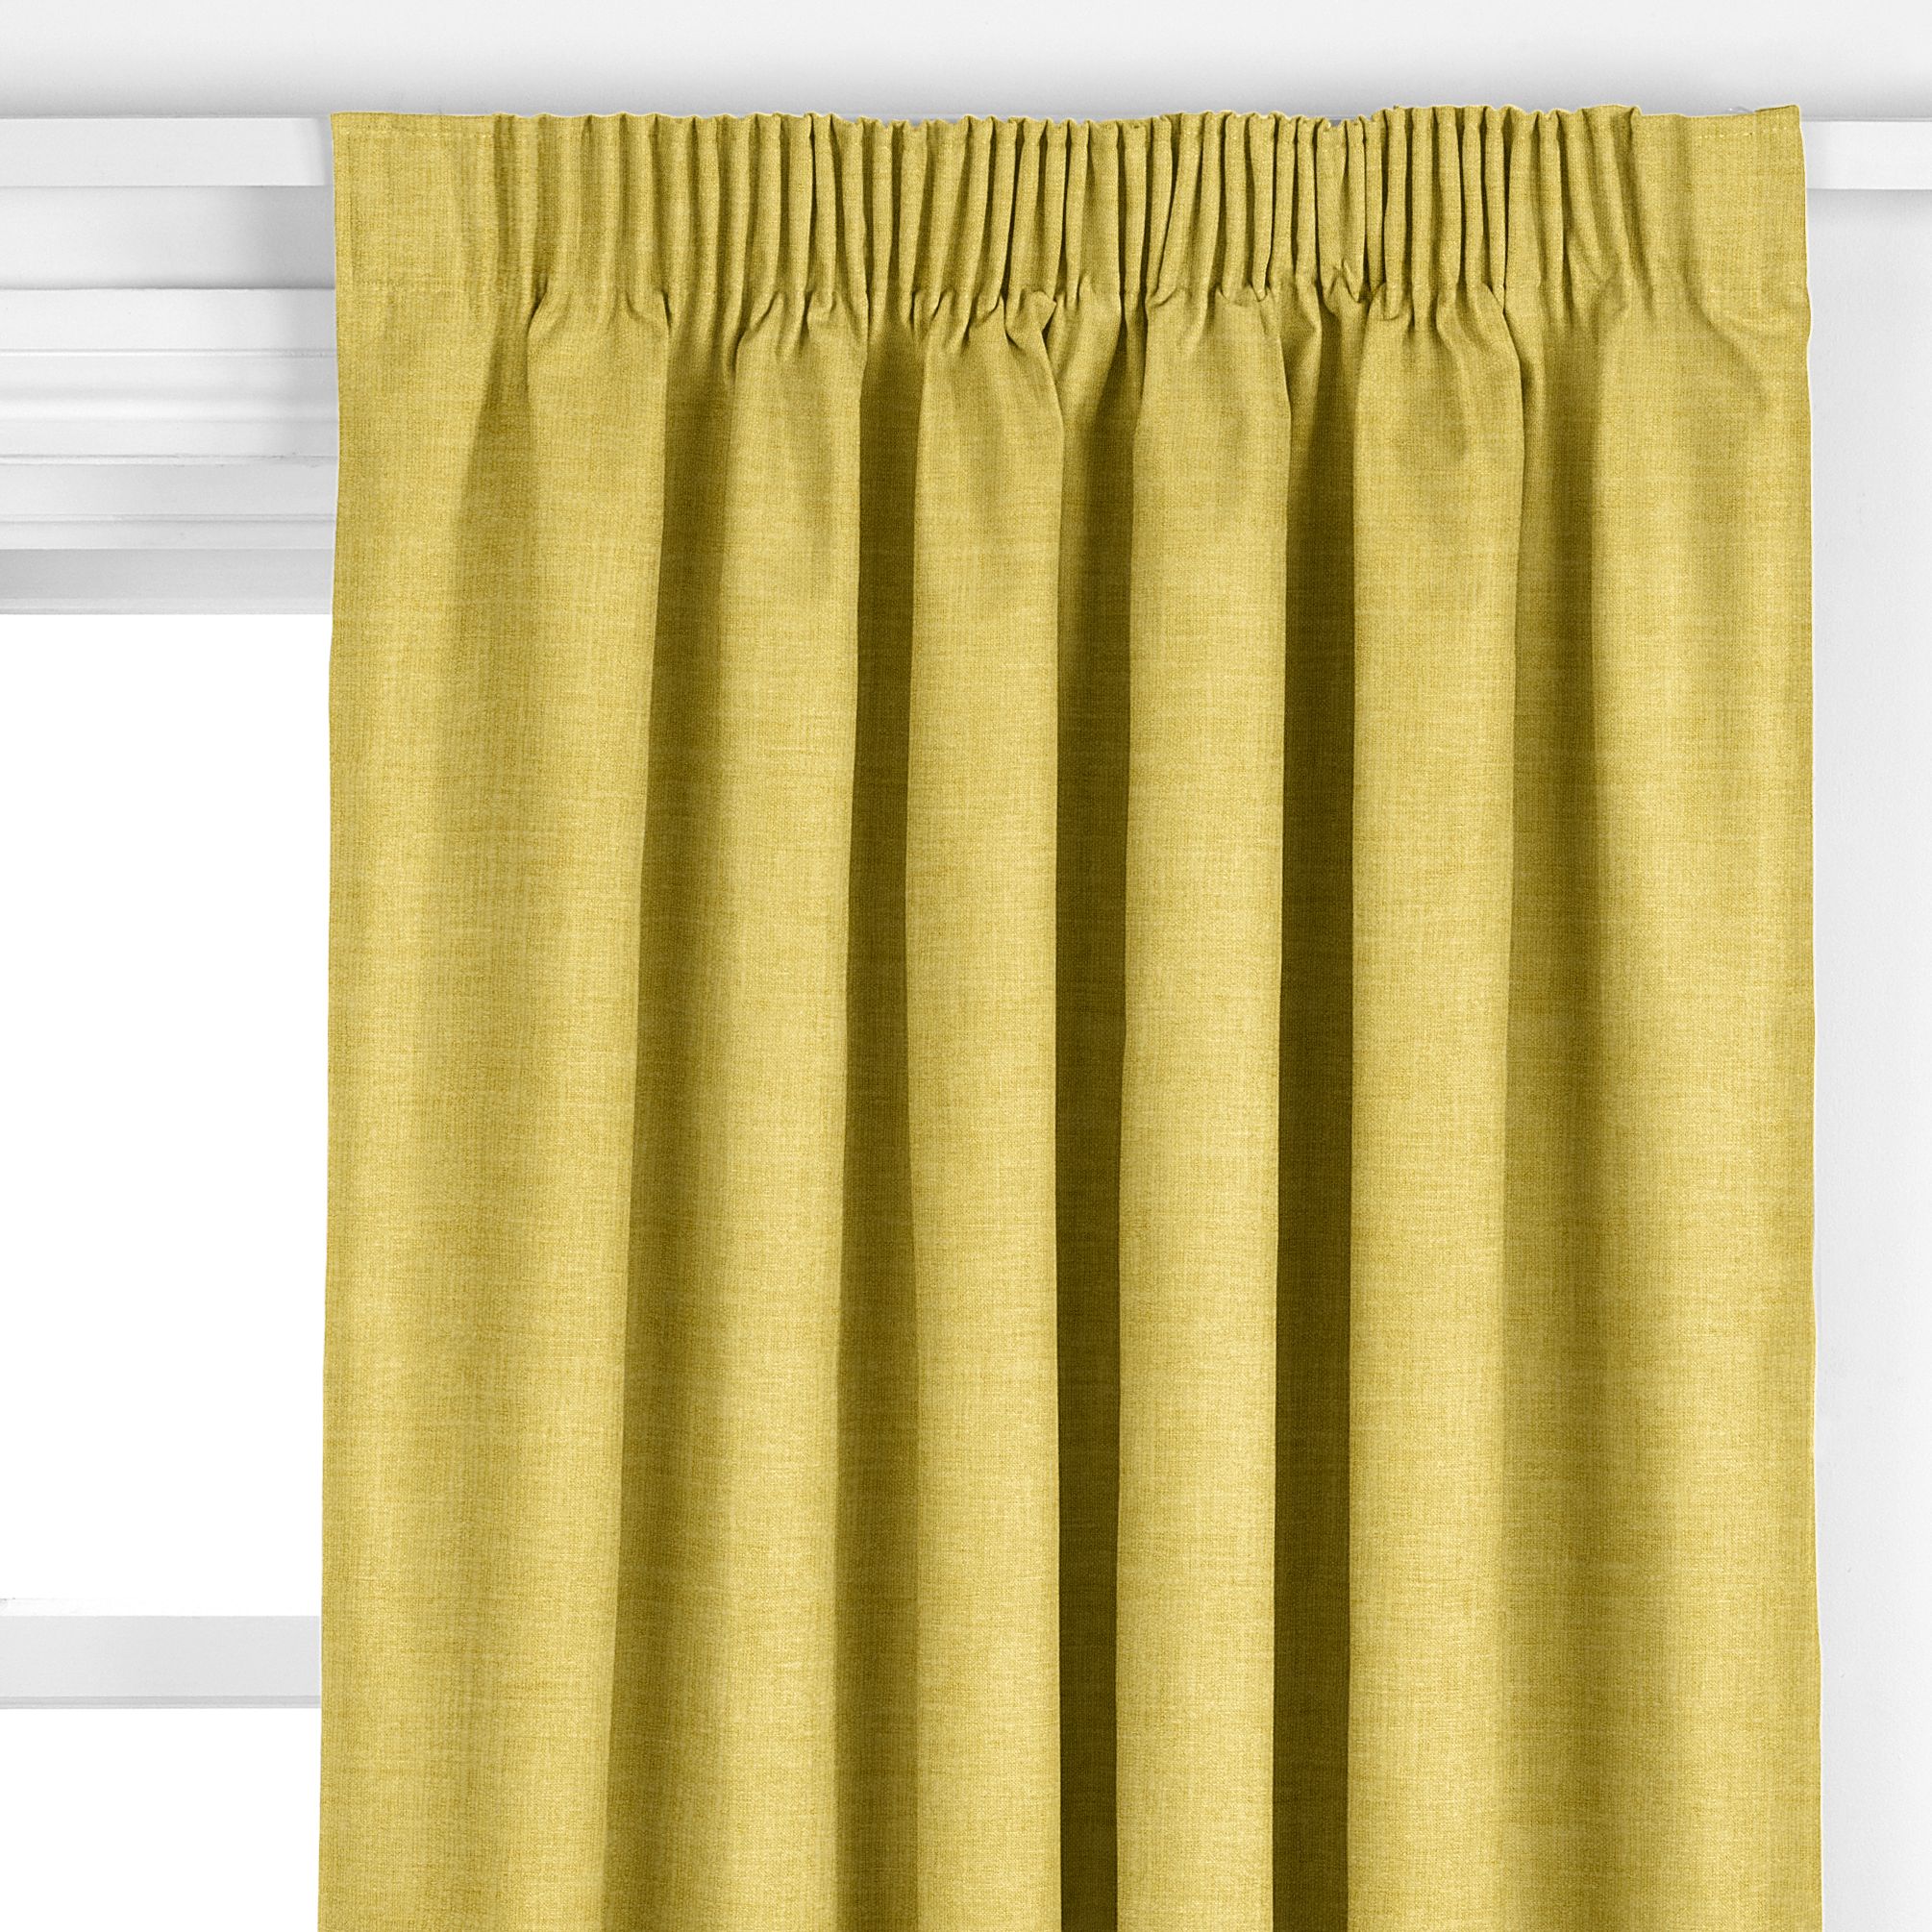 John Lewis Cotton Blend Made to Measure Curtains, Saffron